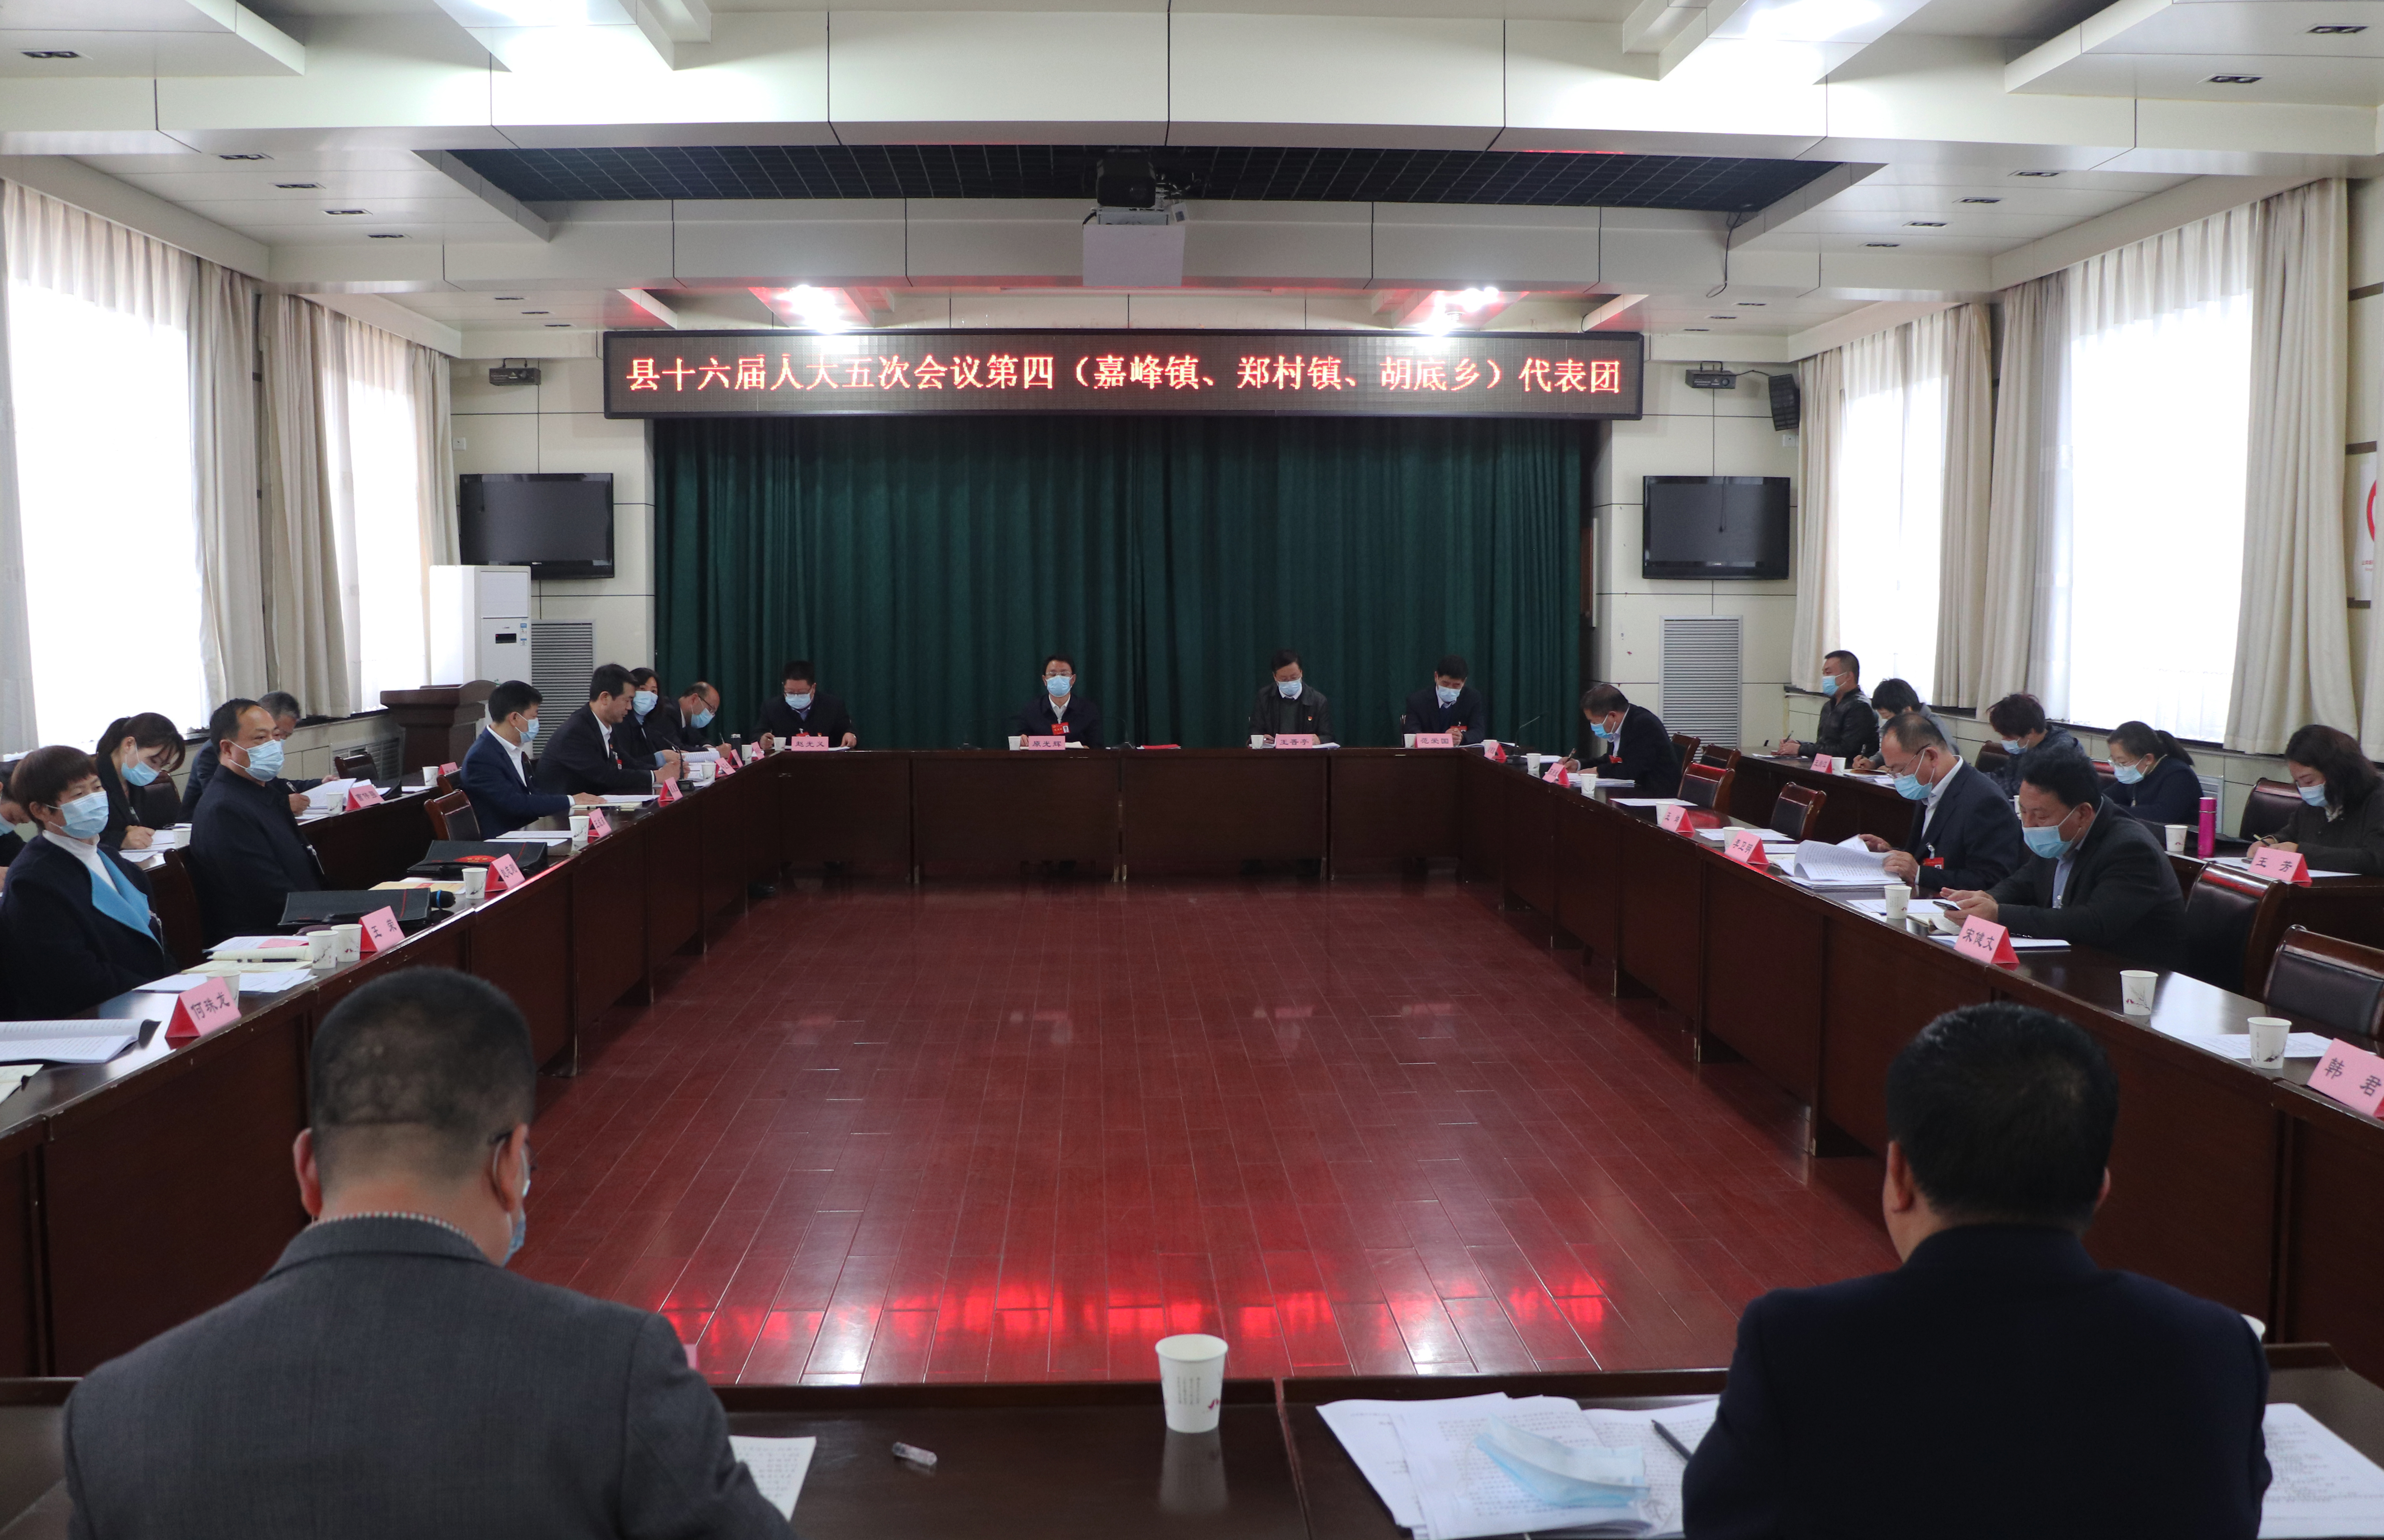 原光辉参加沁水县第十六届人民代表大会第五次会议第四代表团审议